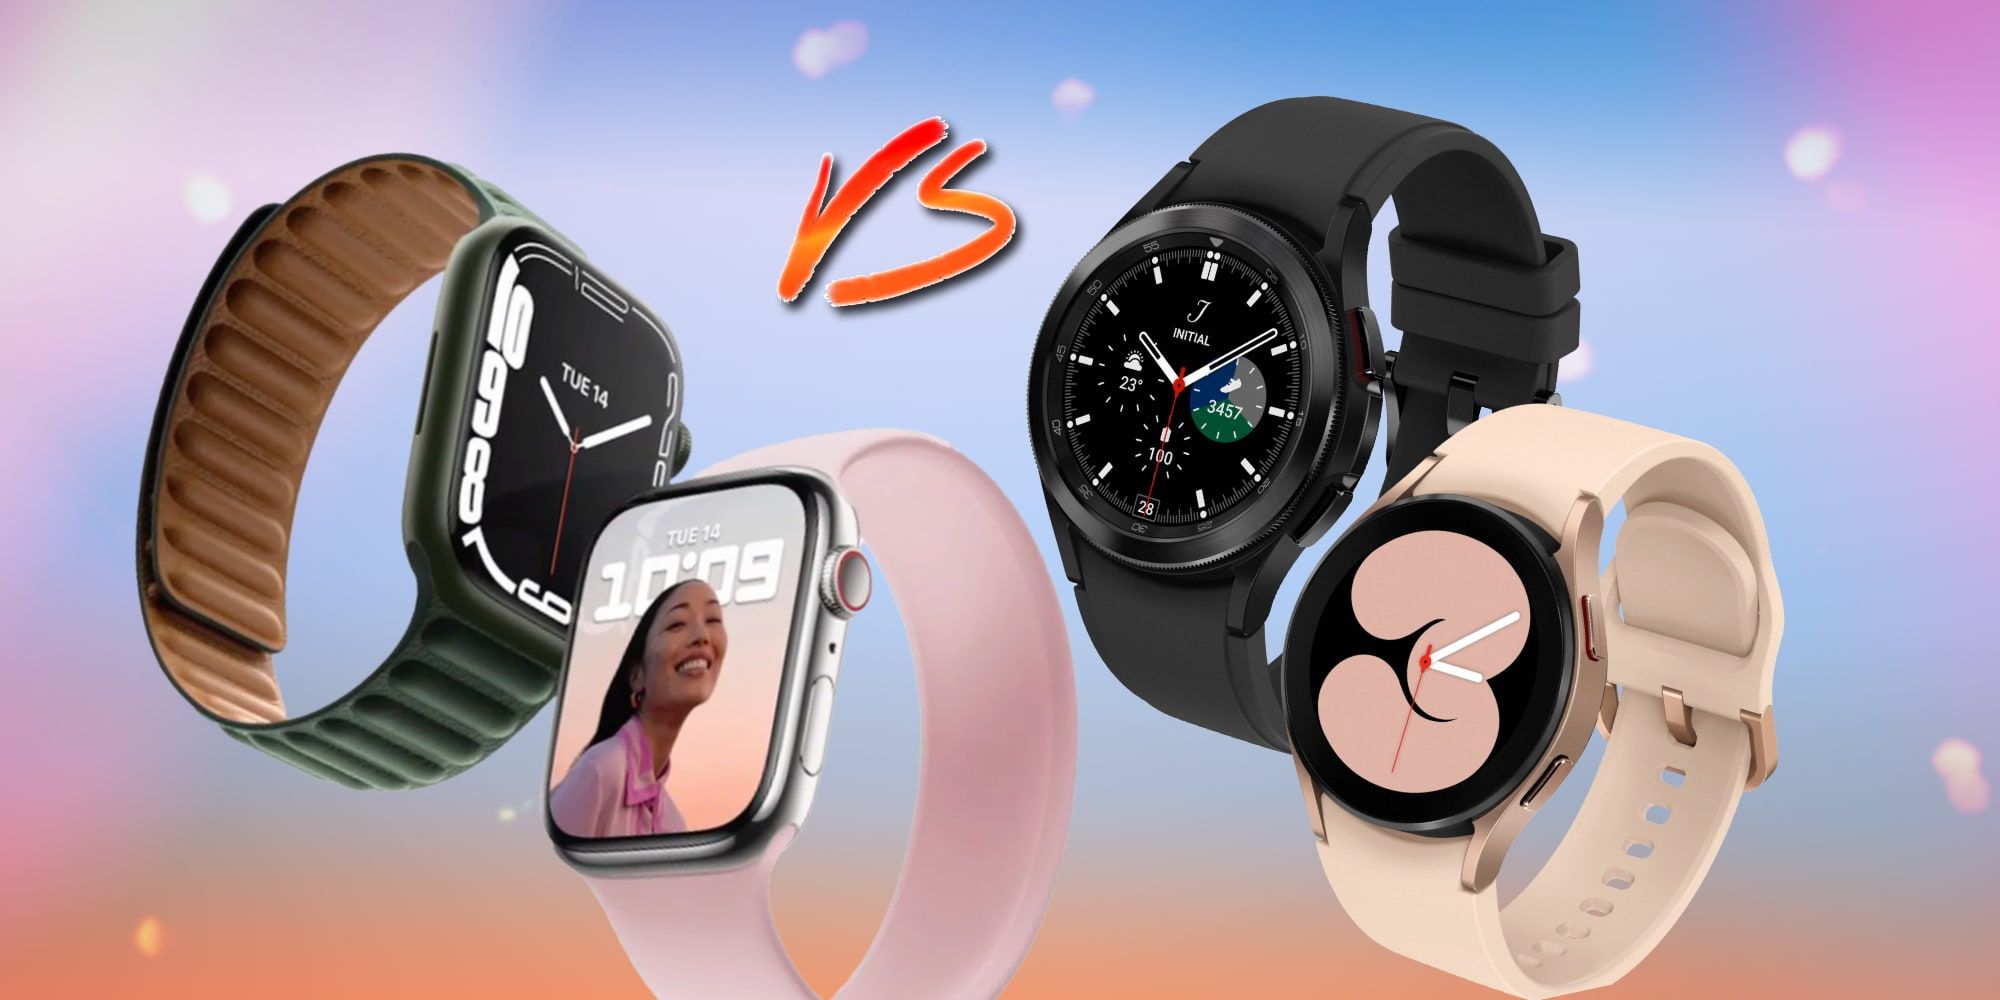 Apple Watch Series 7 Vs Galaxy Watch 4 Is Apples Wearable Still King